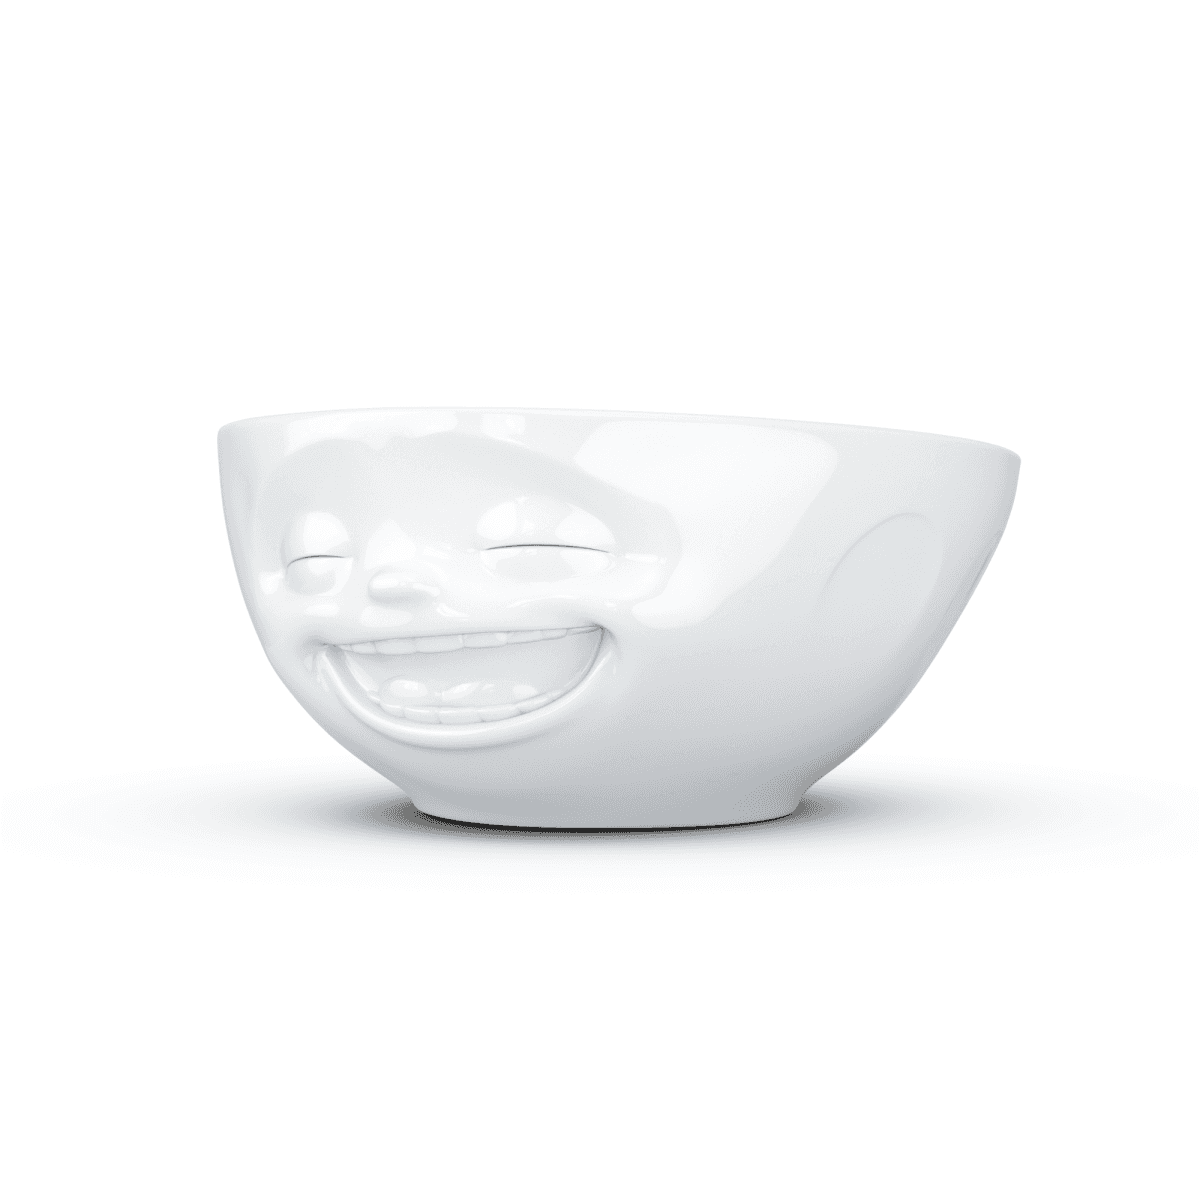 Immagine del prodotto Ciotola Risata 3D in Porcellana 350 ml | TASSEN By Fiftyeight Products